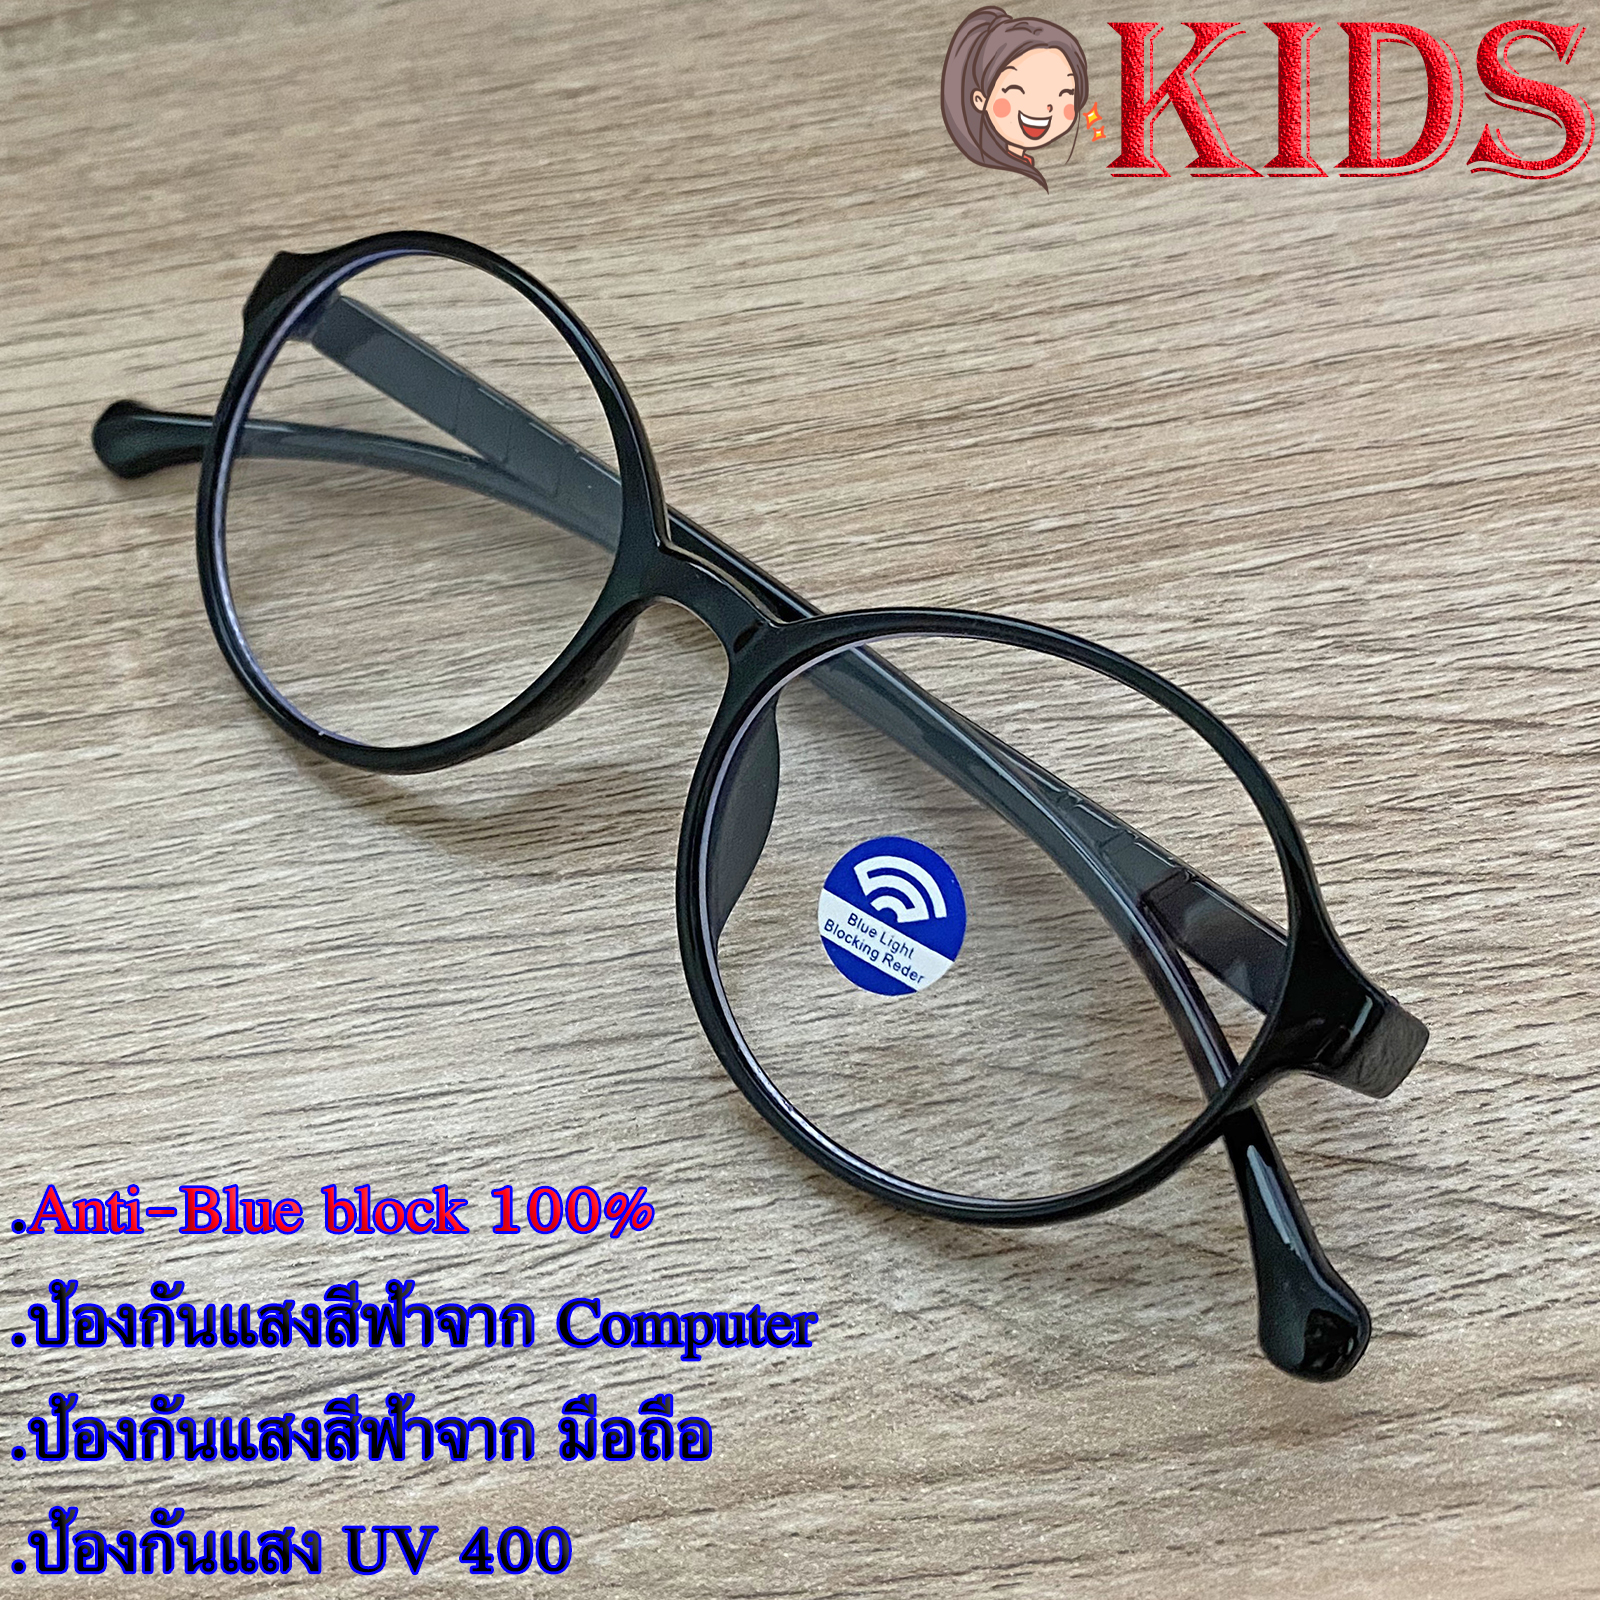 Blue Block แว่นตาเด็ก กรองแสงสีฟ้า กรองแสงคอม รุ่น 1016 สีดำ พลาสติก พีซี เกรด เอ ขาข้อต่อ กรองแสงสูงสุด95% กัน UV 100% Glasses